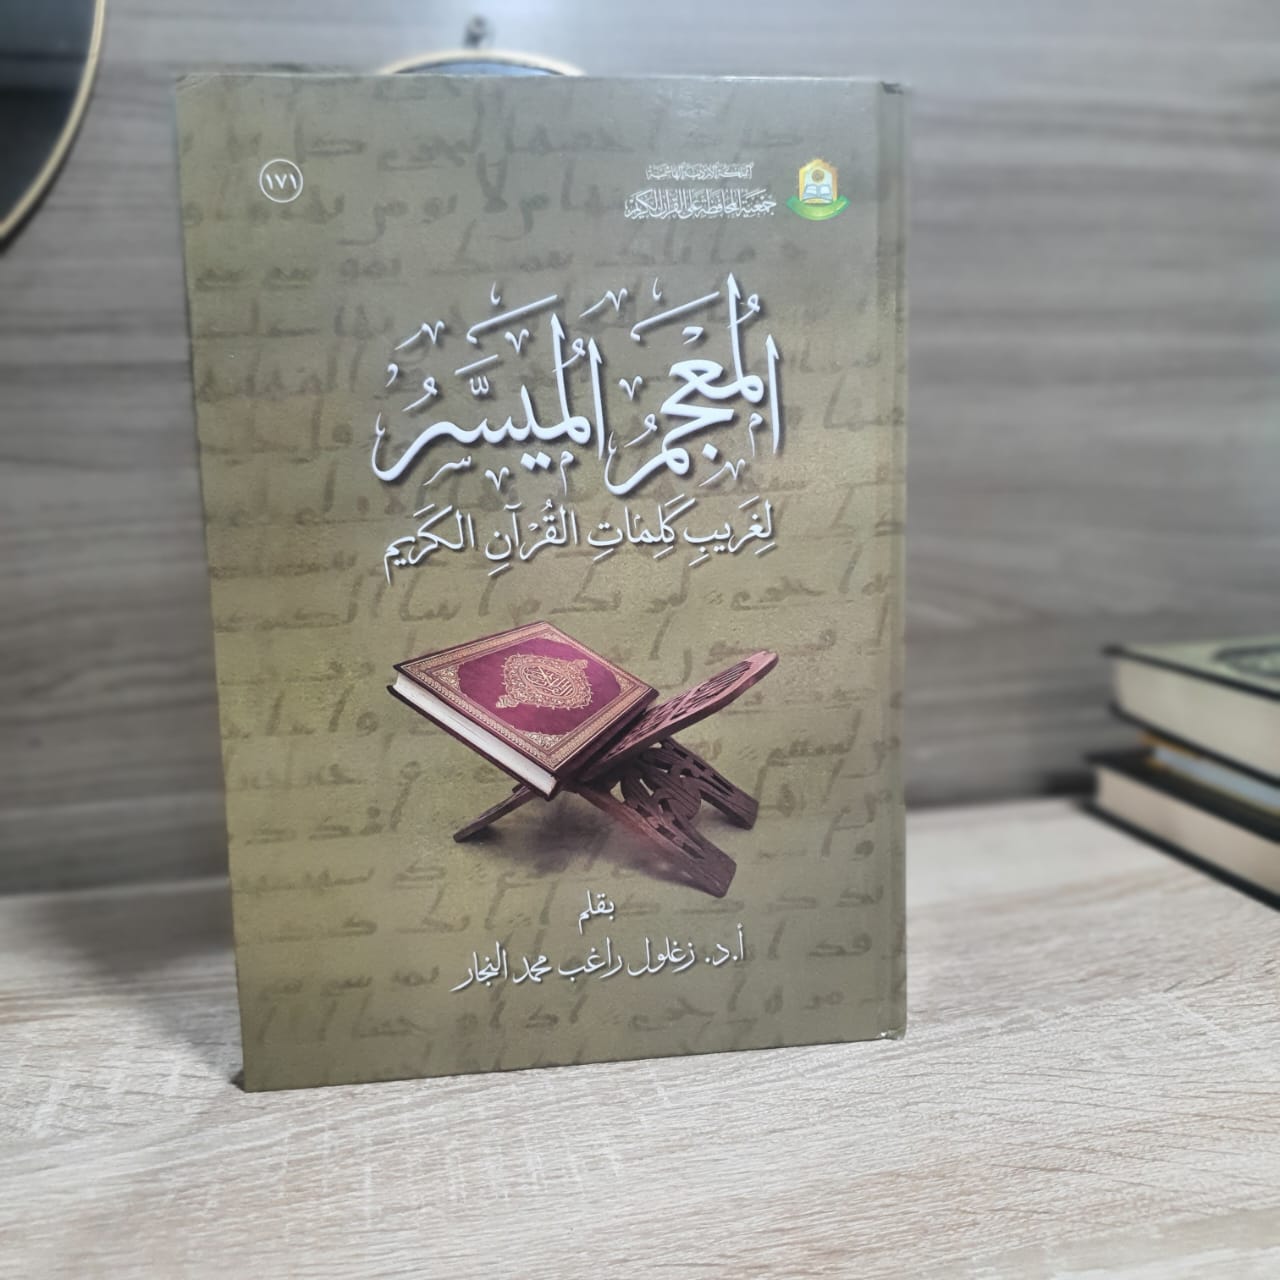 المعجم الميسر لغريب كلمات القرآن الكريم